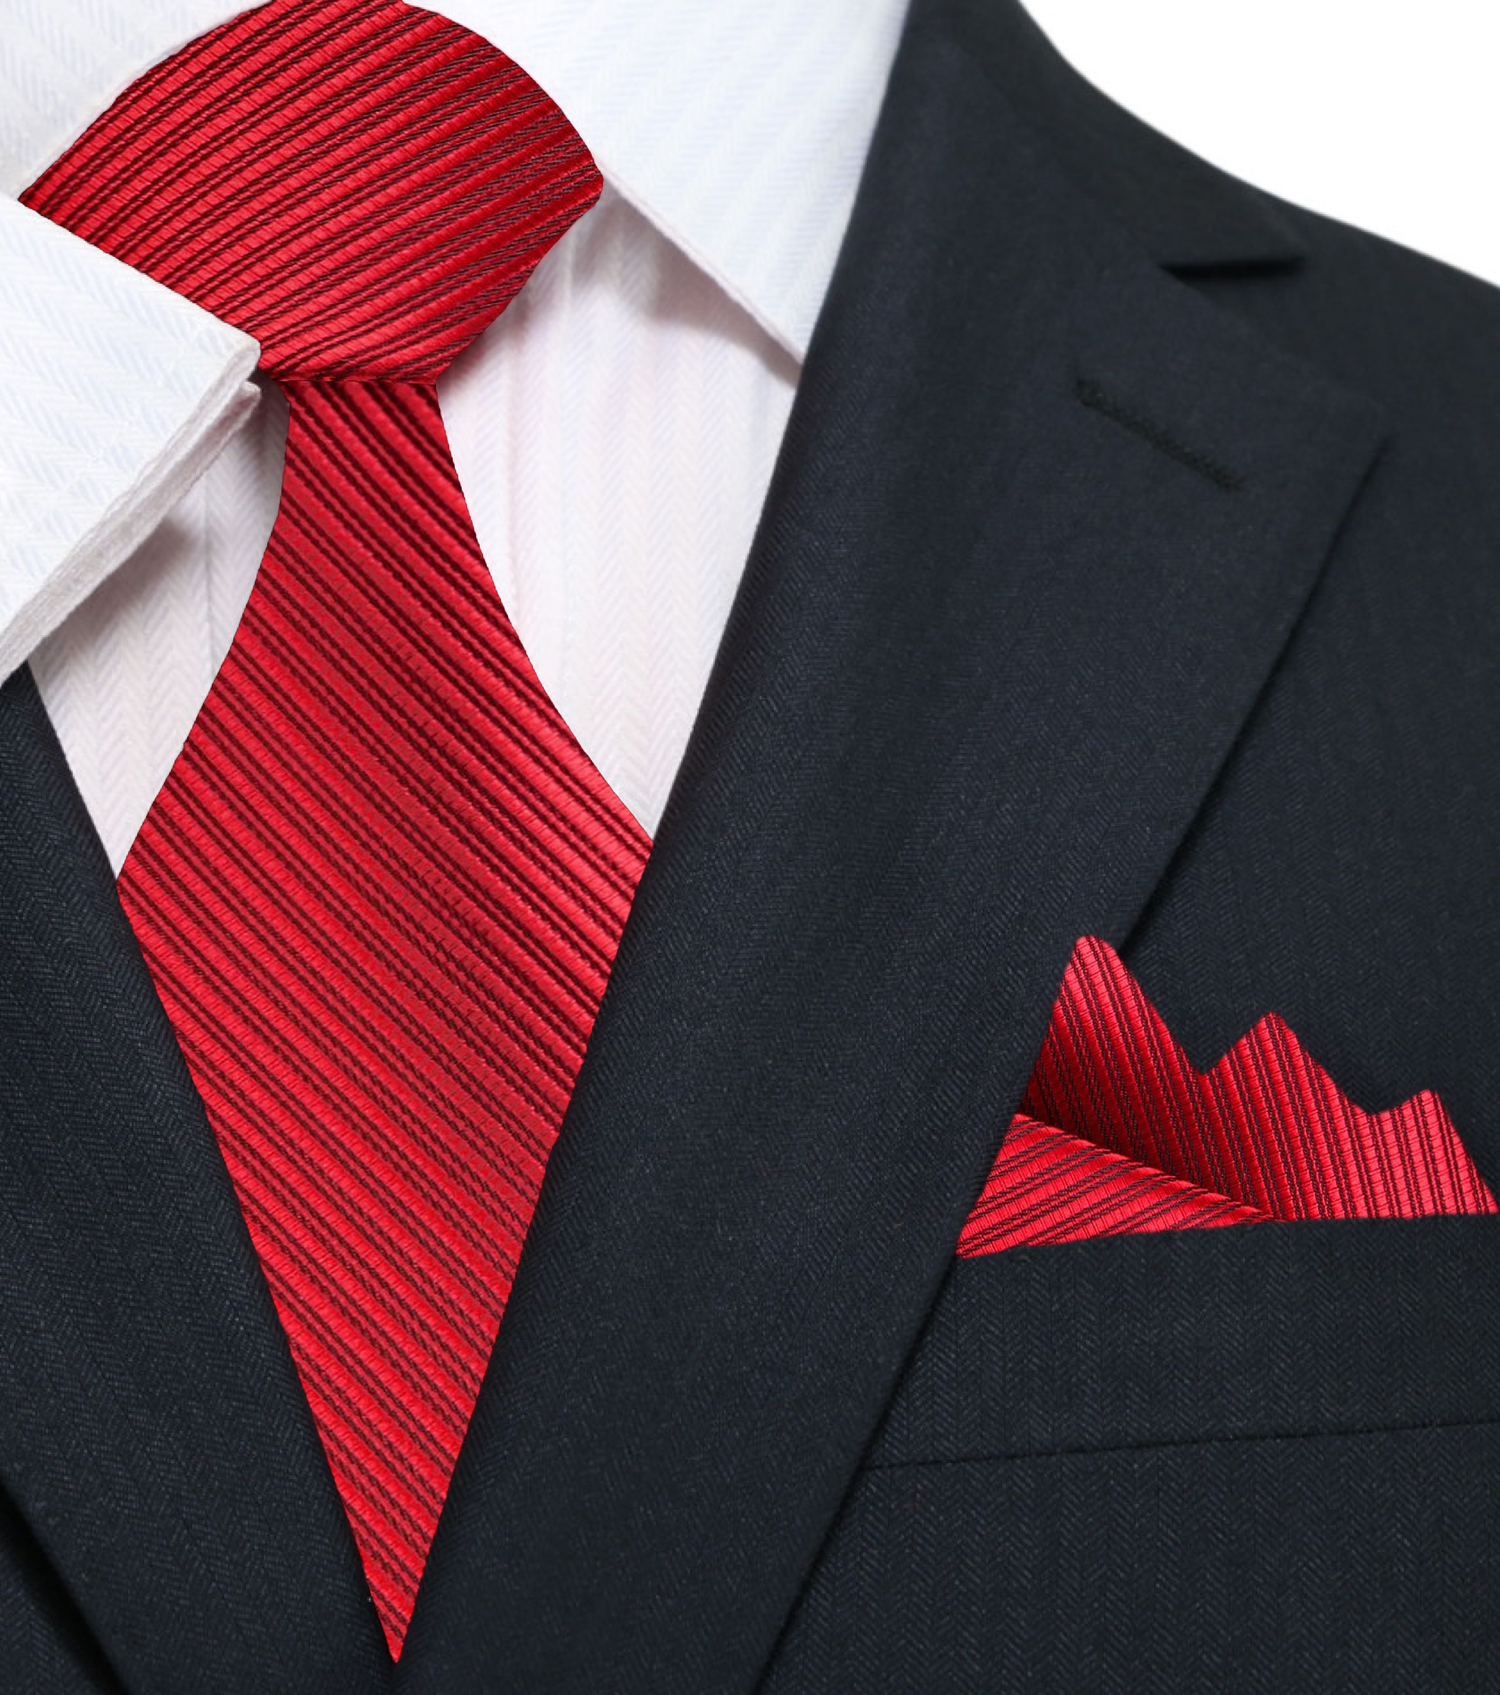 A Red, Black Pinstripe Pattern Silk Necktie, Matching Pocket Square